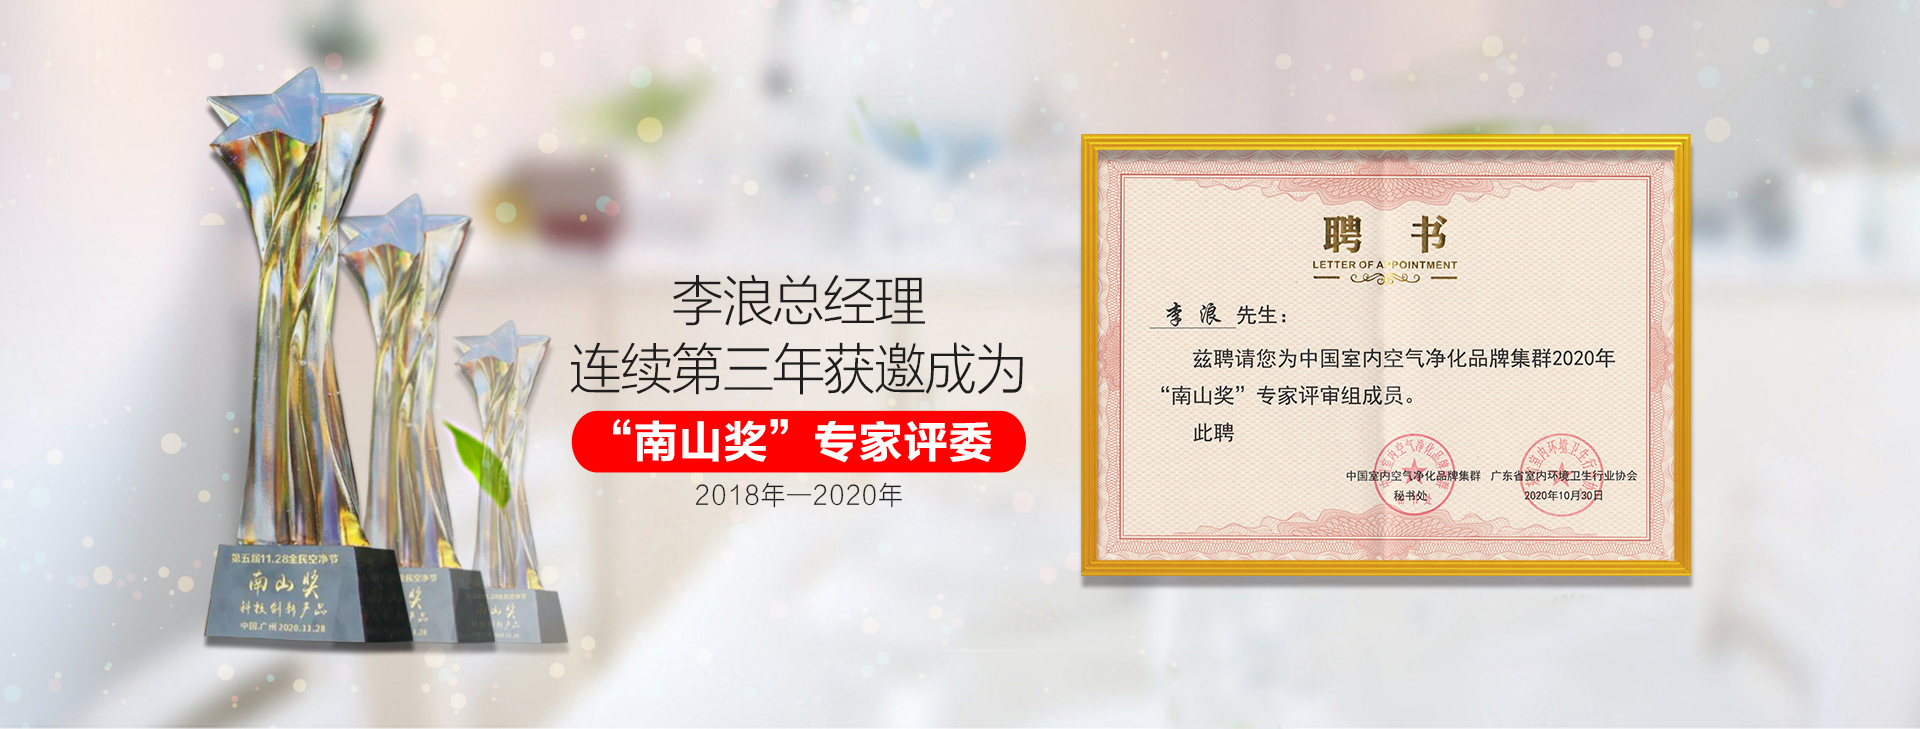 东展科技李浪总经理连续第二年获邀成为“南山奖”专家评委